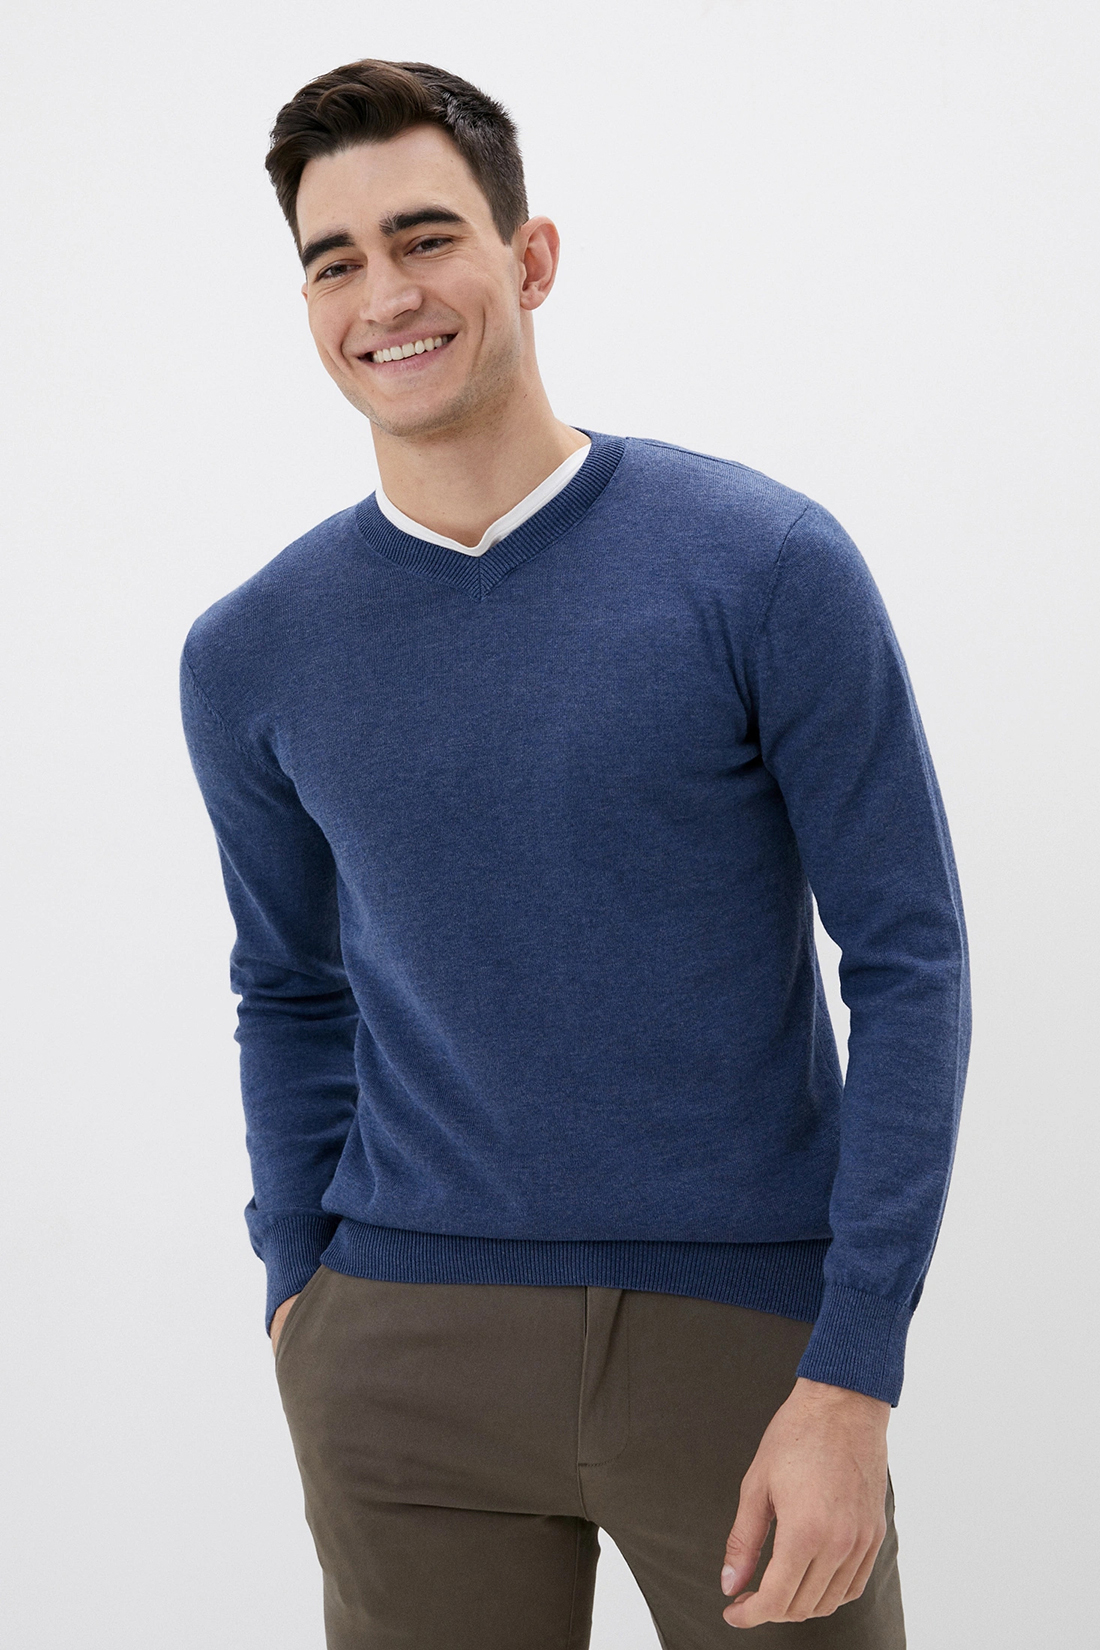 Базовый пуловер с хлопком (арт. baon B630702), размер XL, цвет baltic blue melange#синий